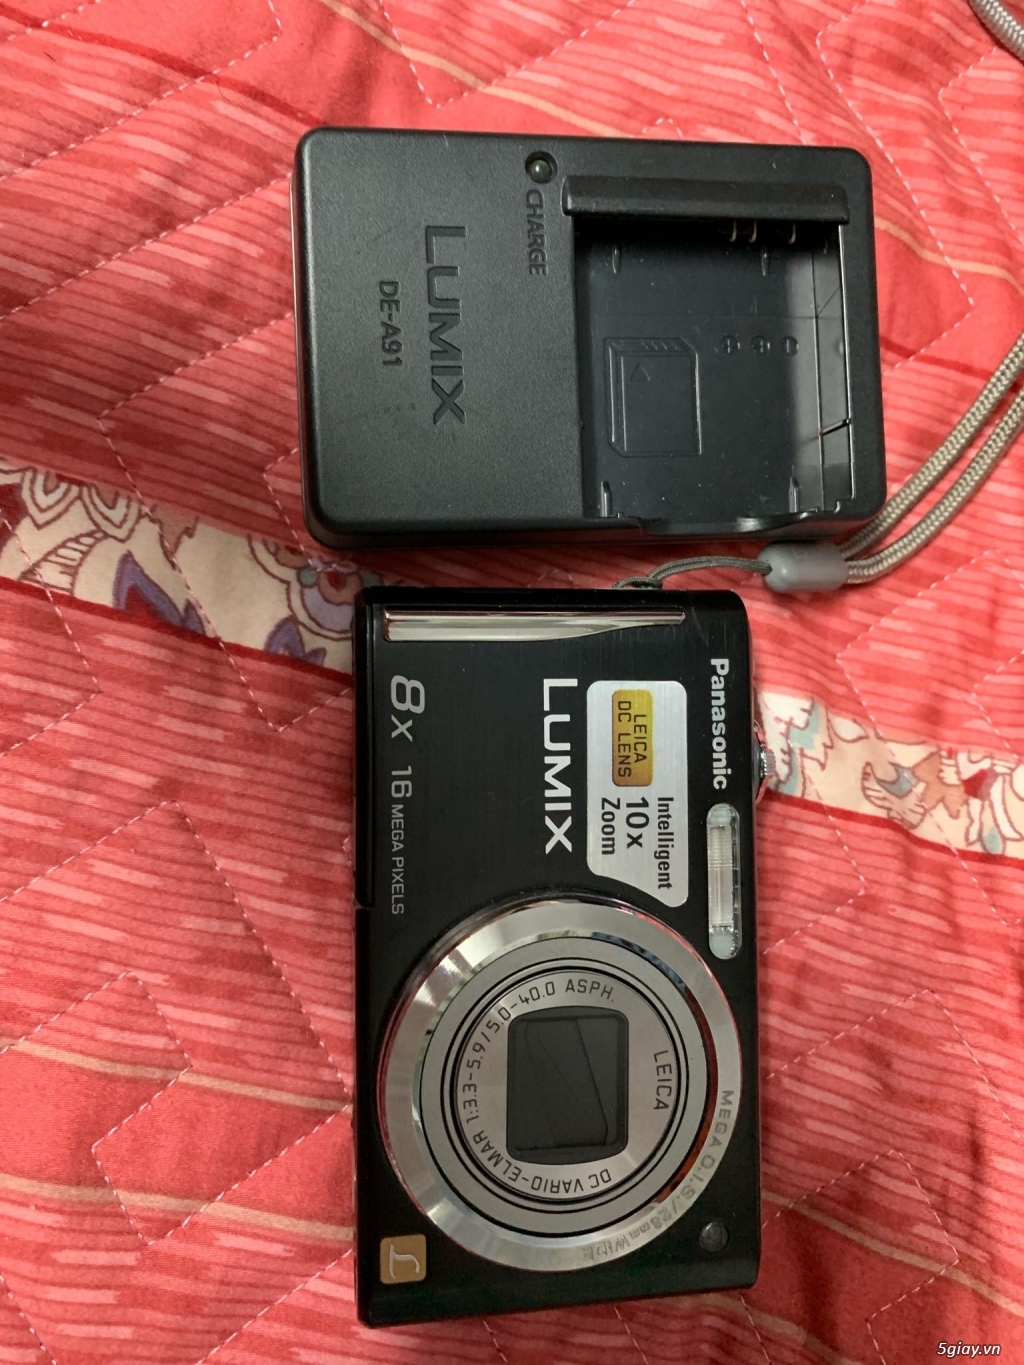 Bán Panasonic Lumix Dmc-fh25 ong kính Leica zoom8x như mới - 4